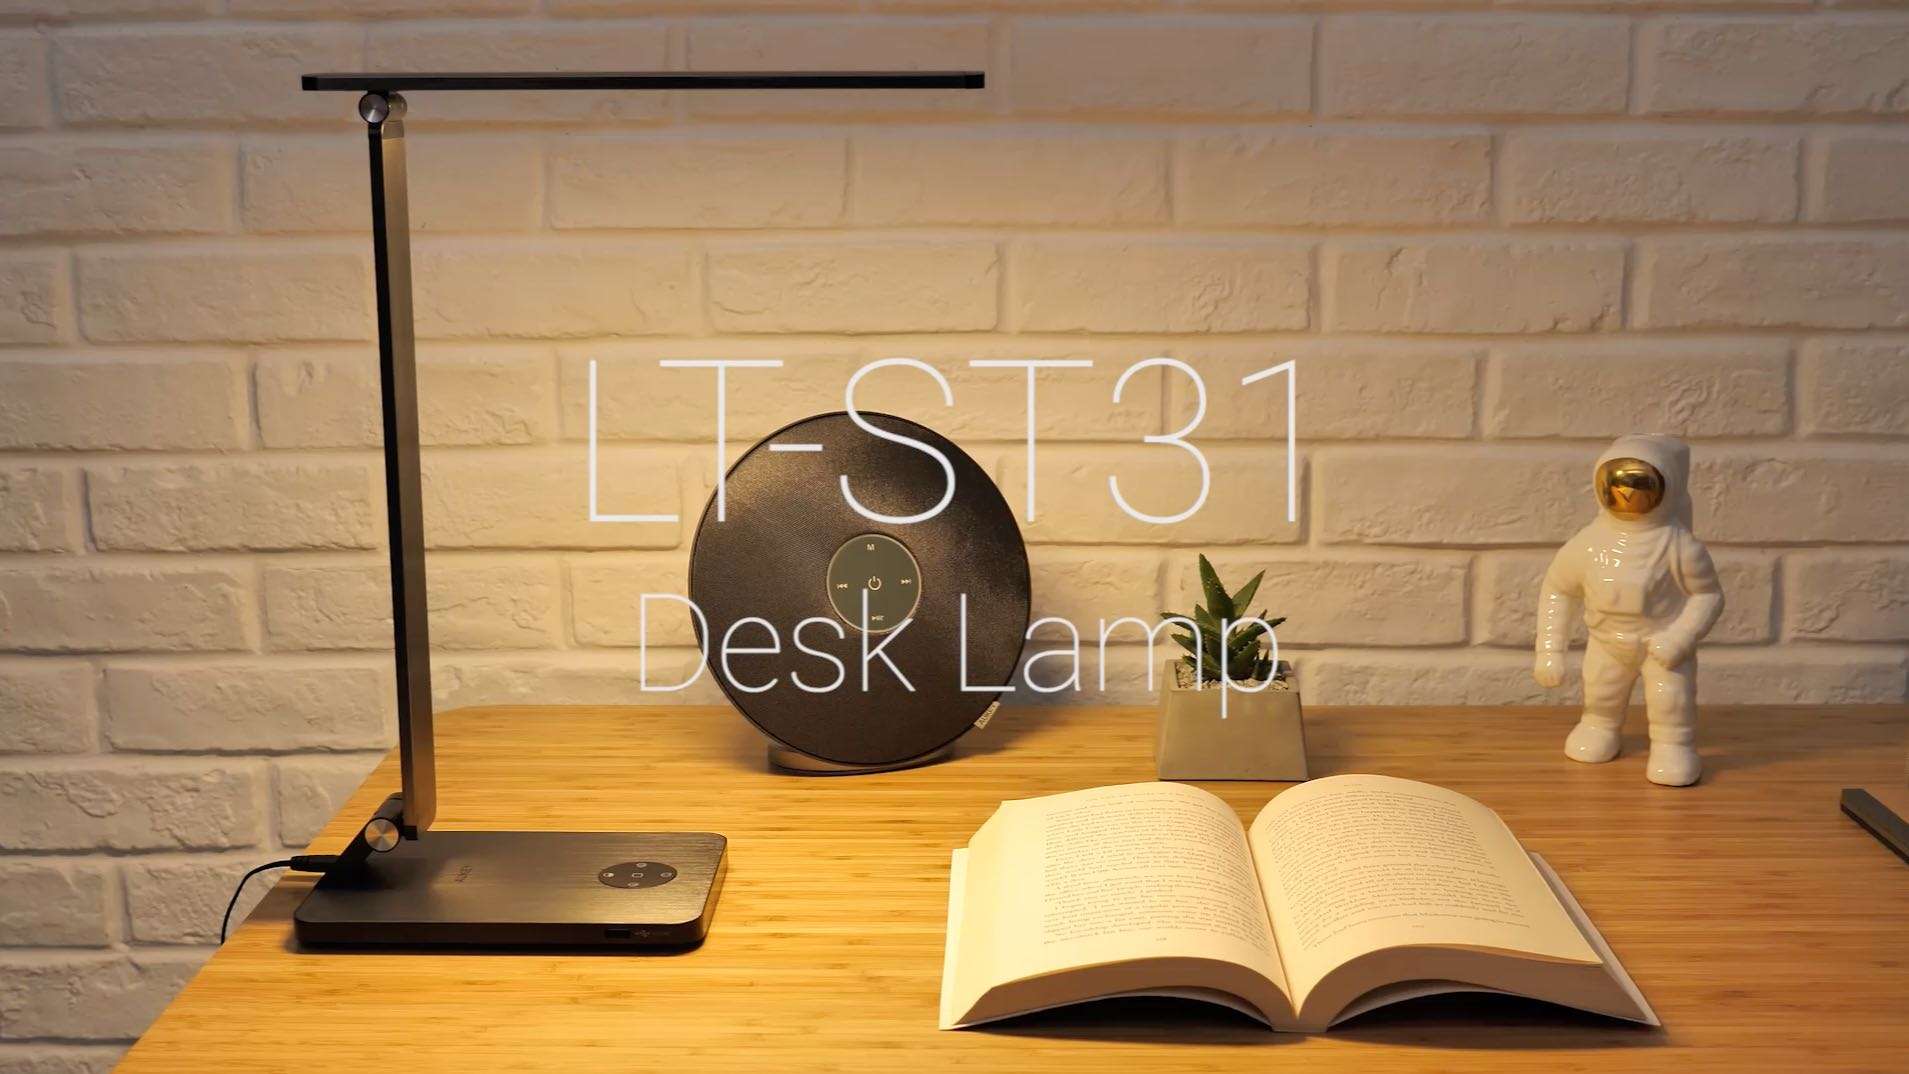 AUKEY｜LT-ST31 Desk Lamp